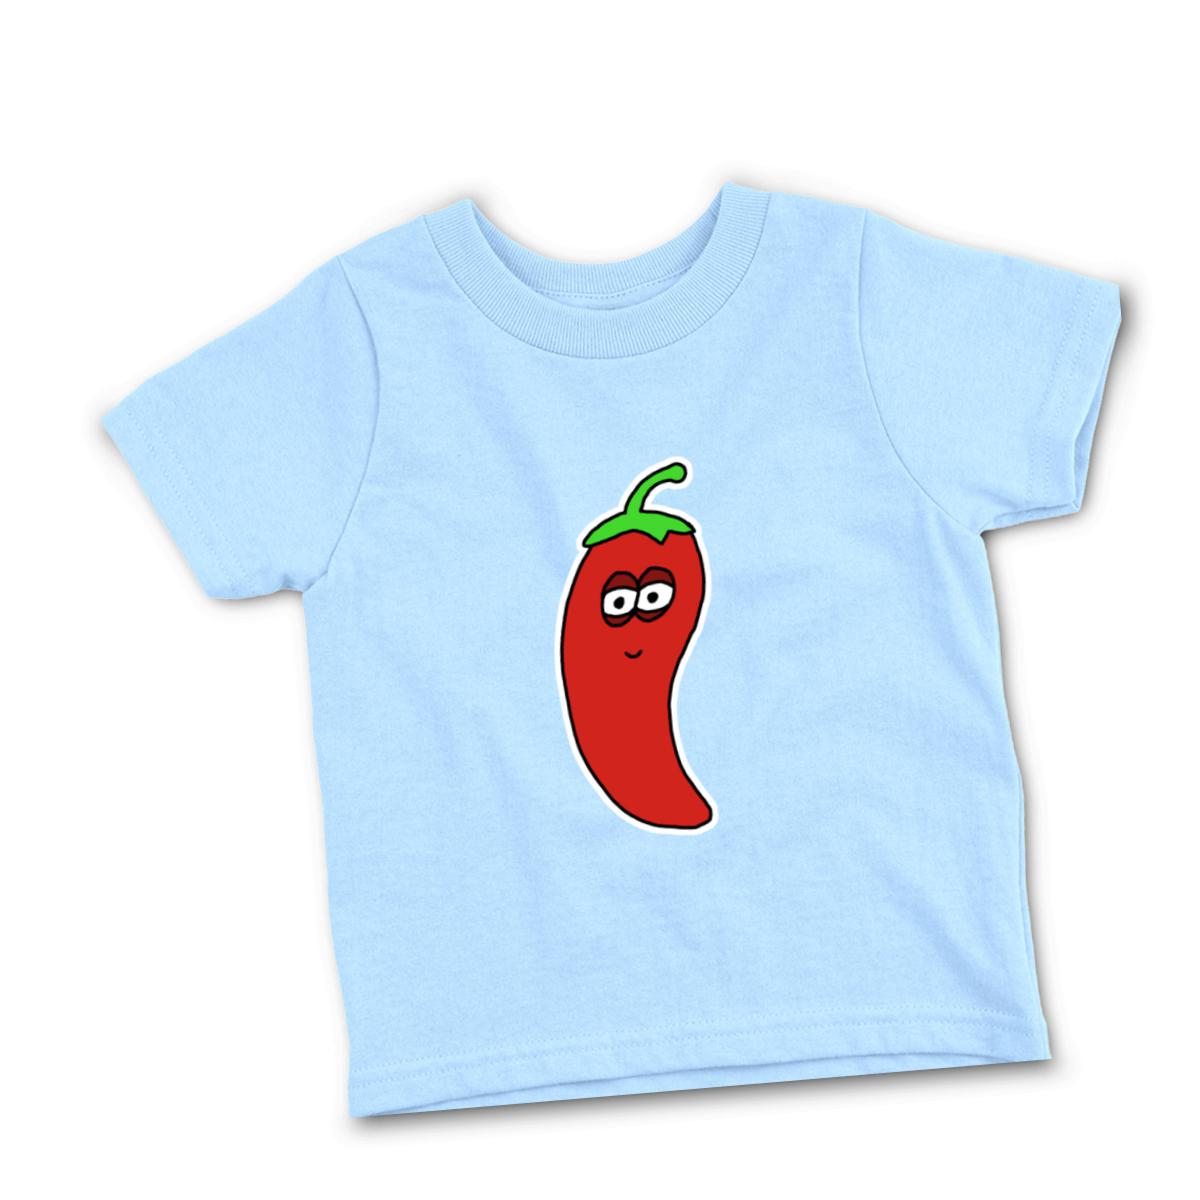 Chili Pepper Toddler Tee 4T light-blue